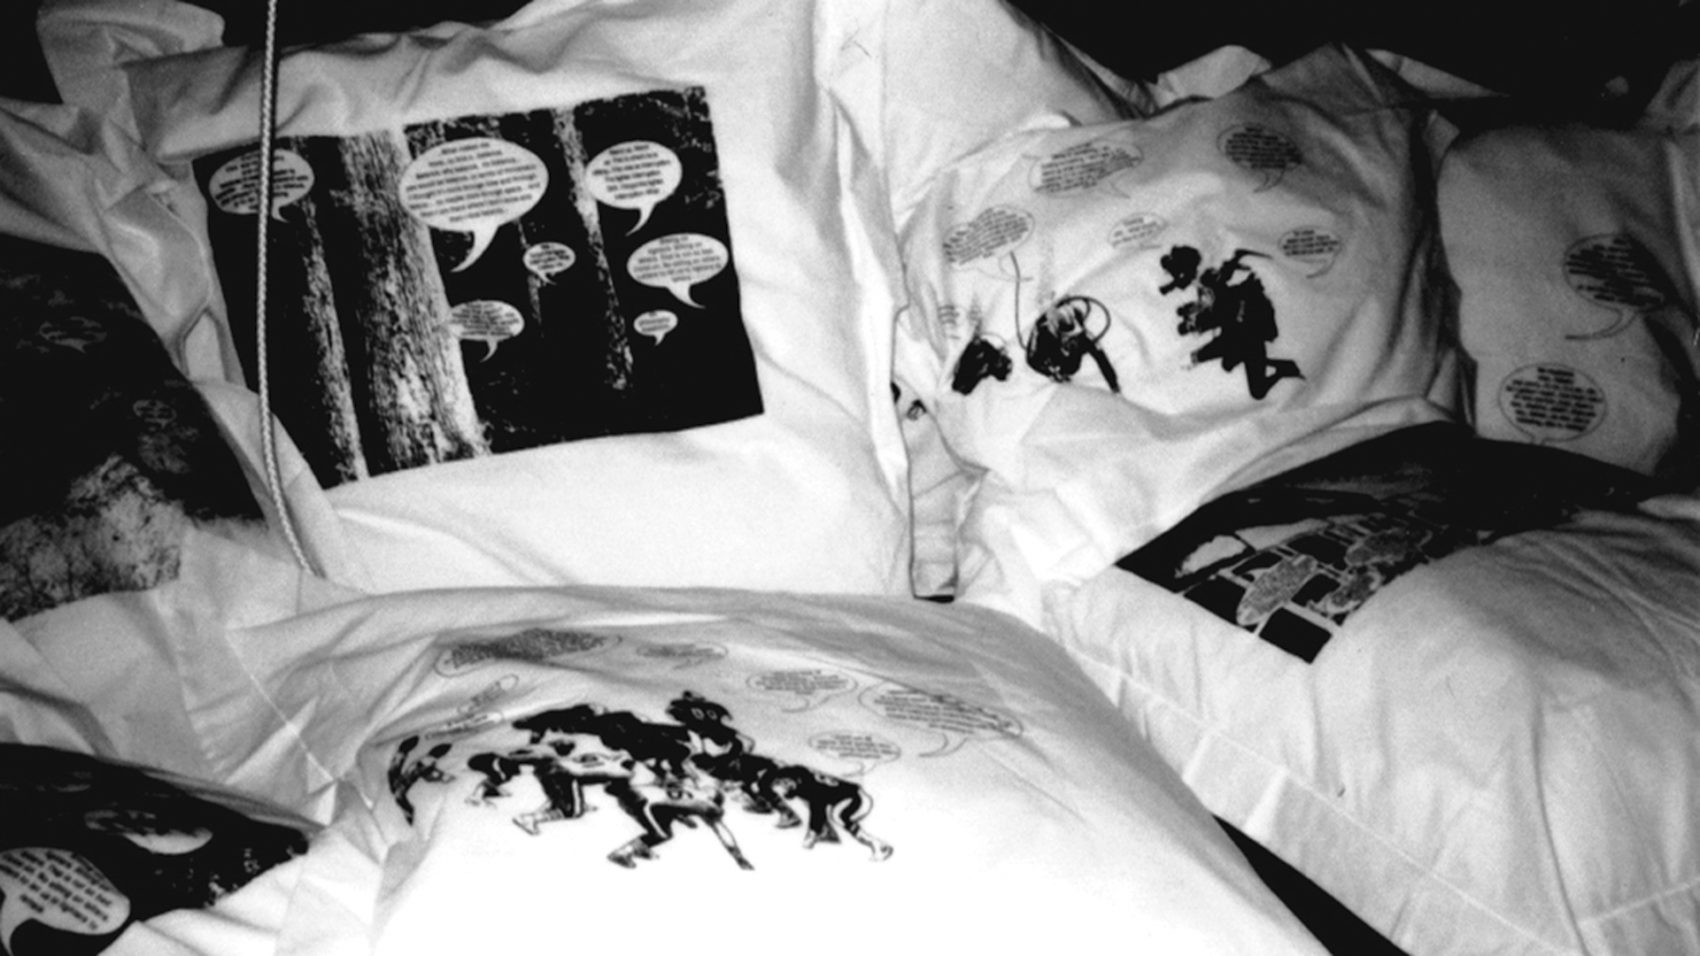 Nadia Lauro – Narrative pillows - Narrative pillows 2001